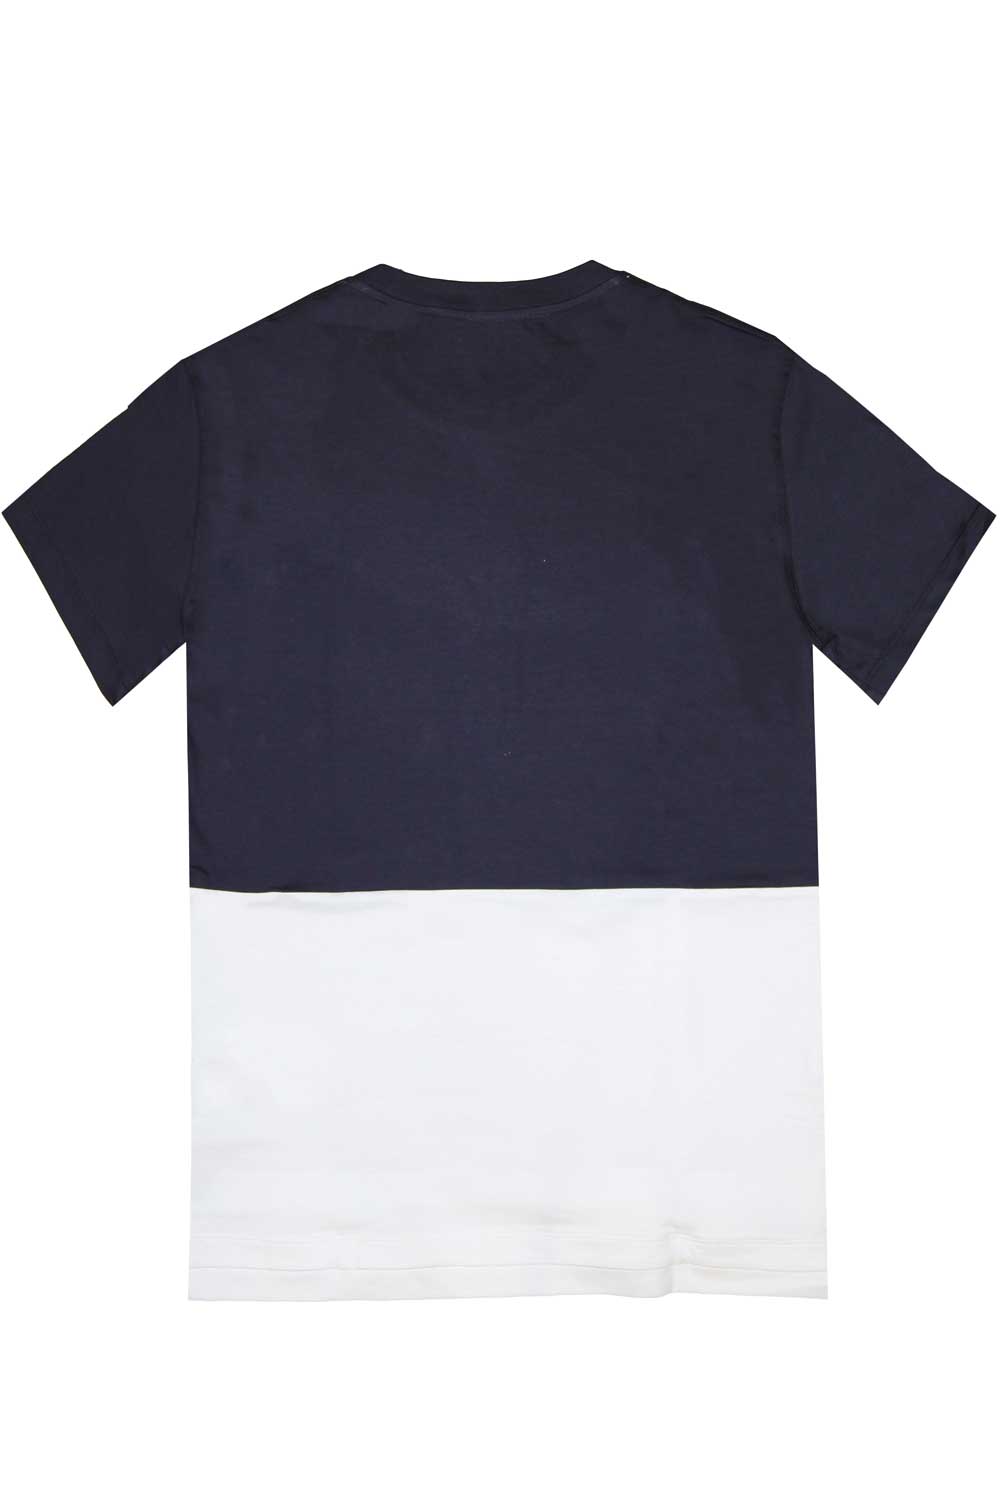 Tshirt bicolore - PAOLO PECORA T-shirt PAOLO PECORA   